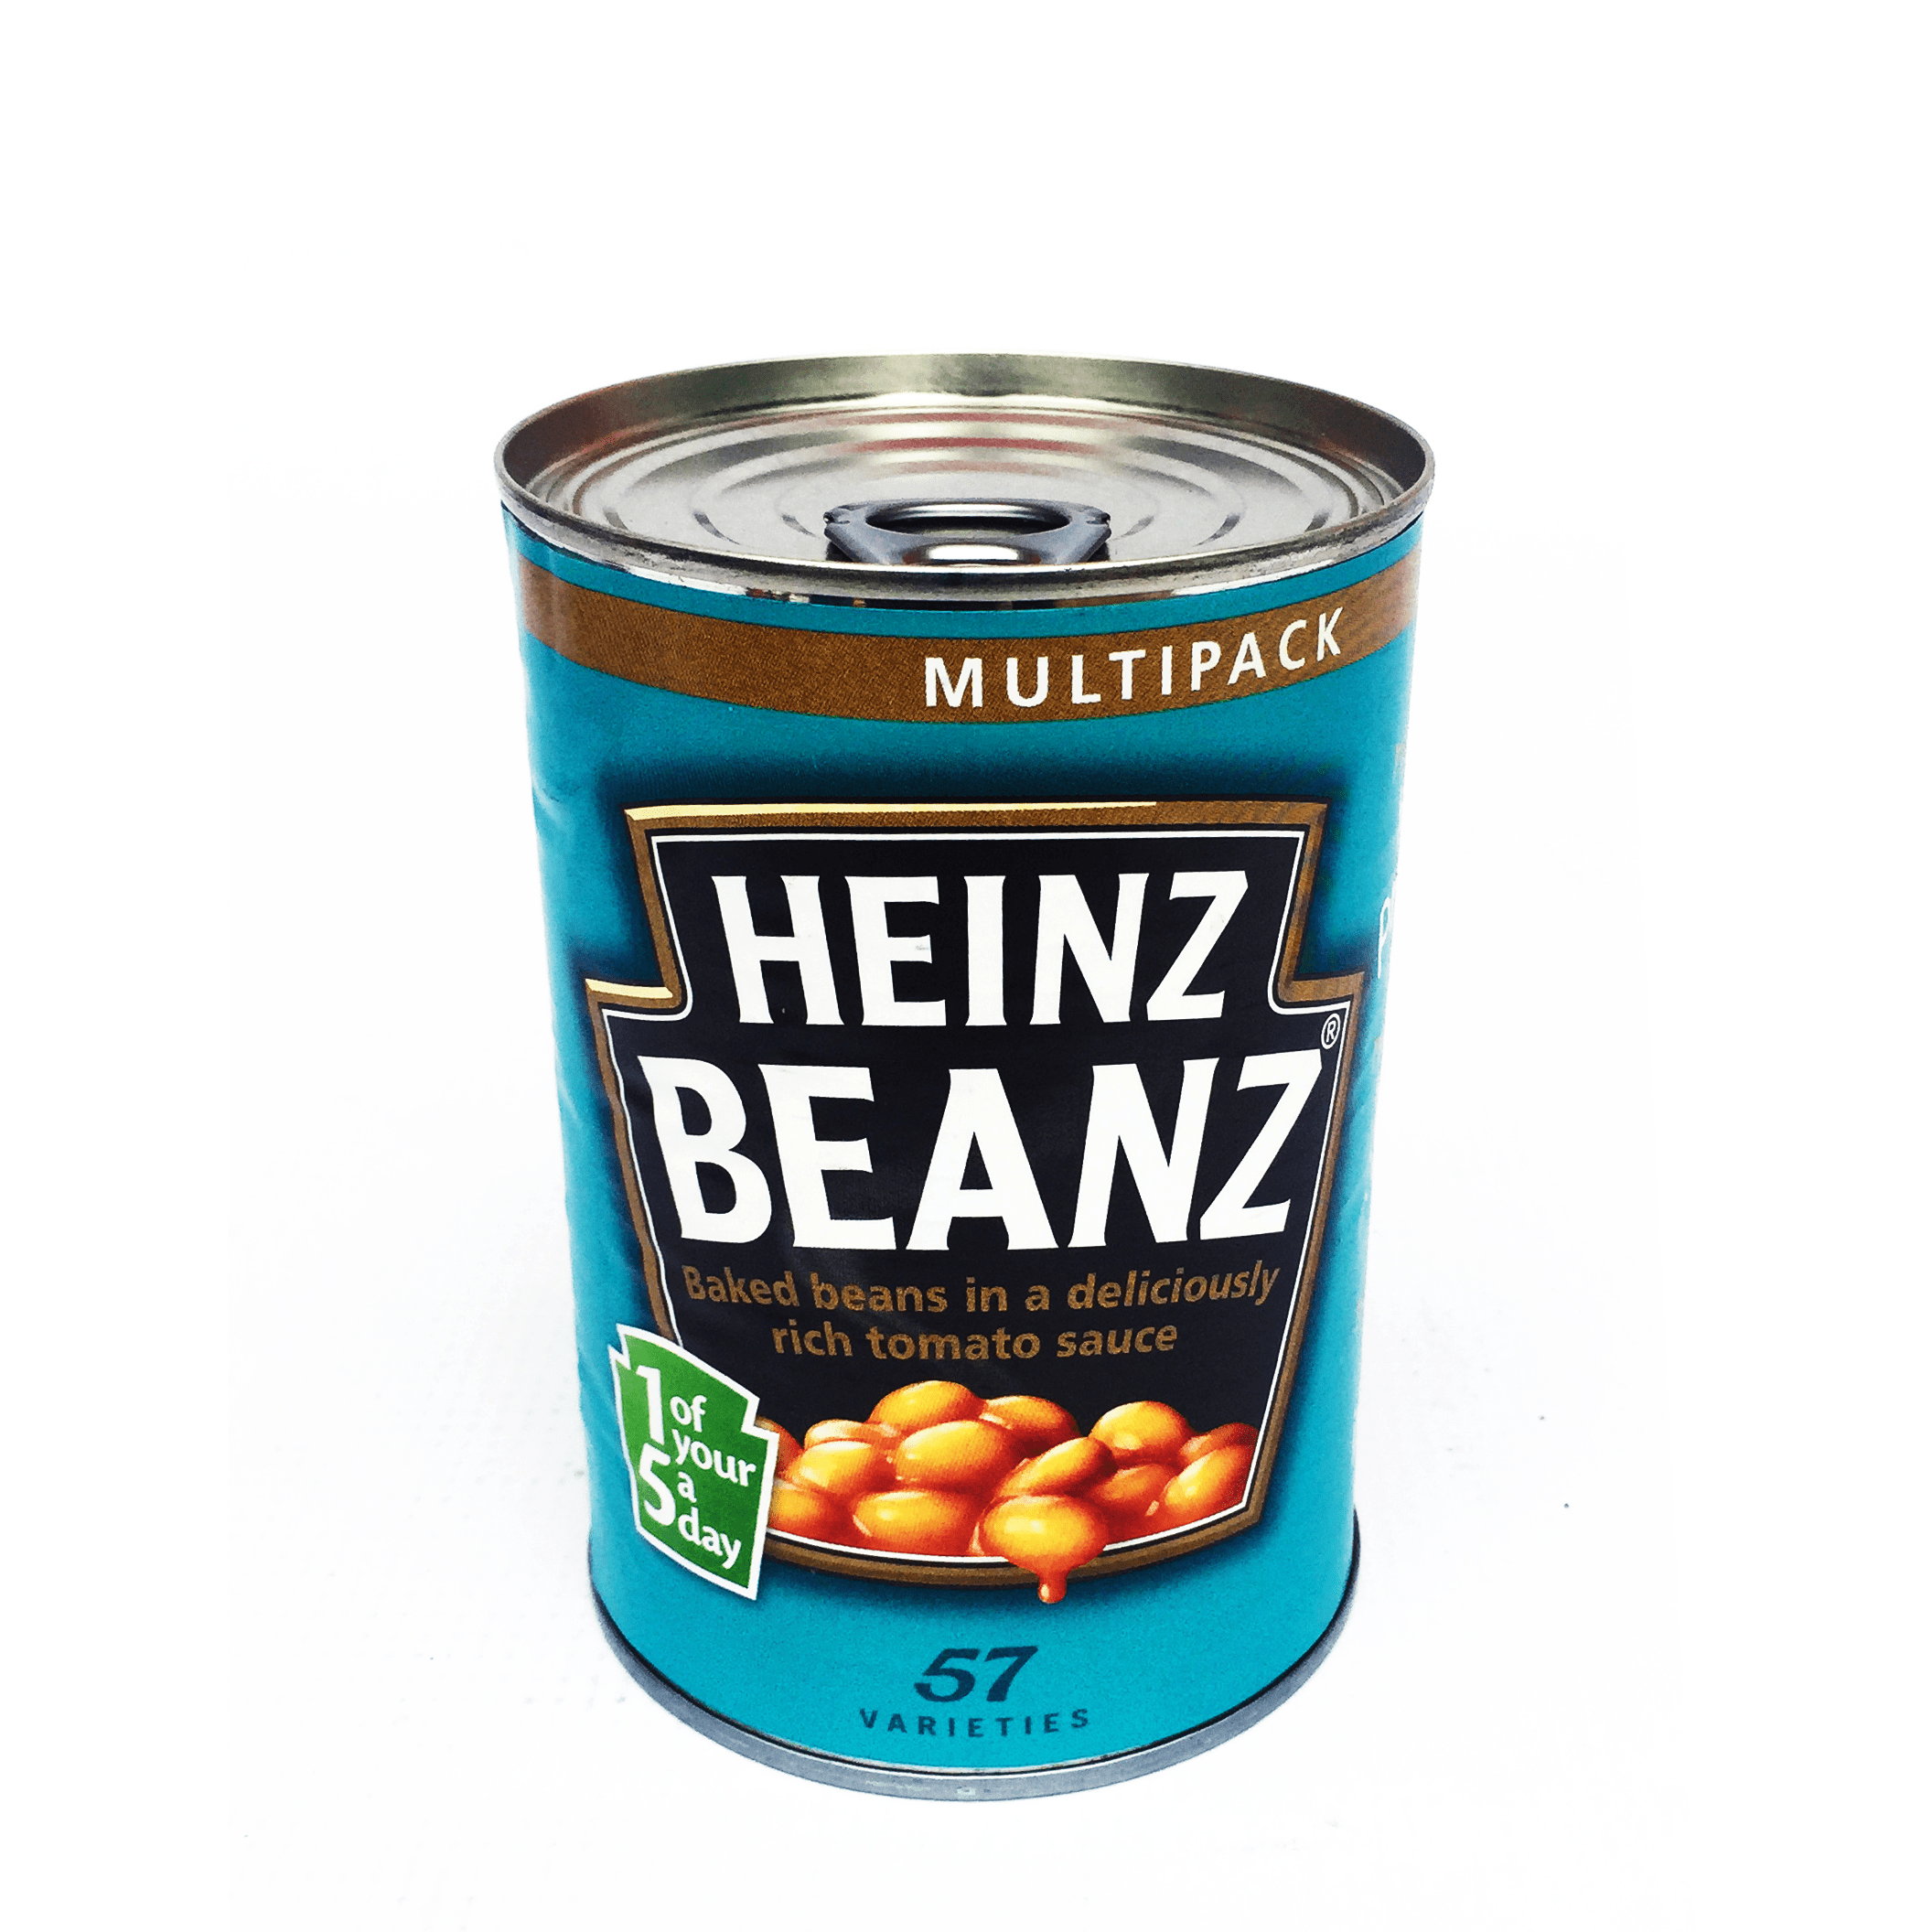 Heinz beanz/count